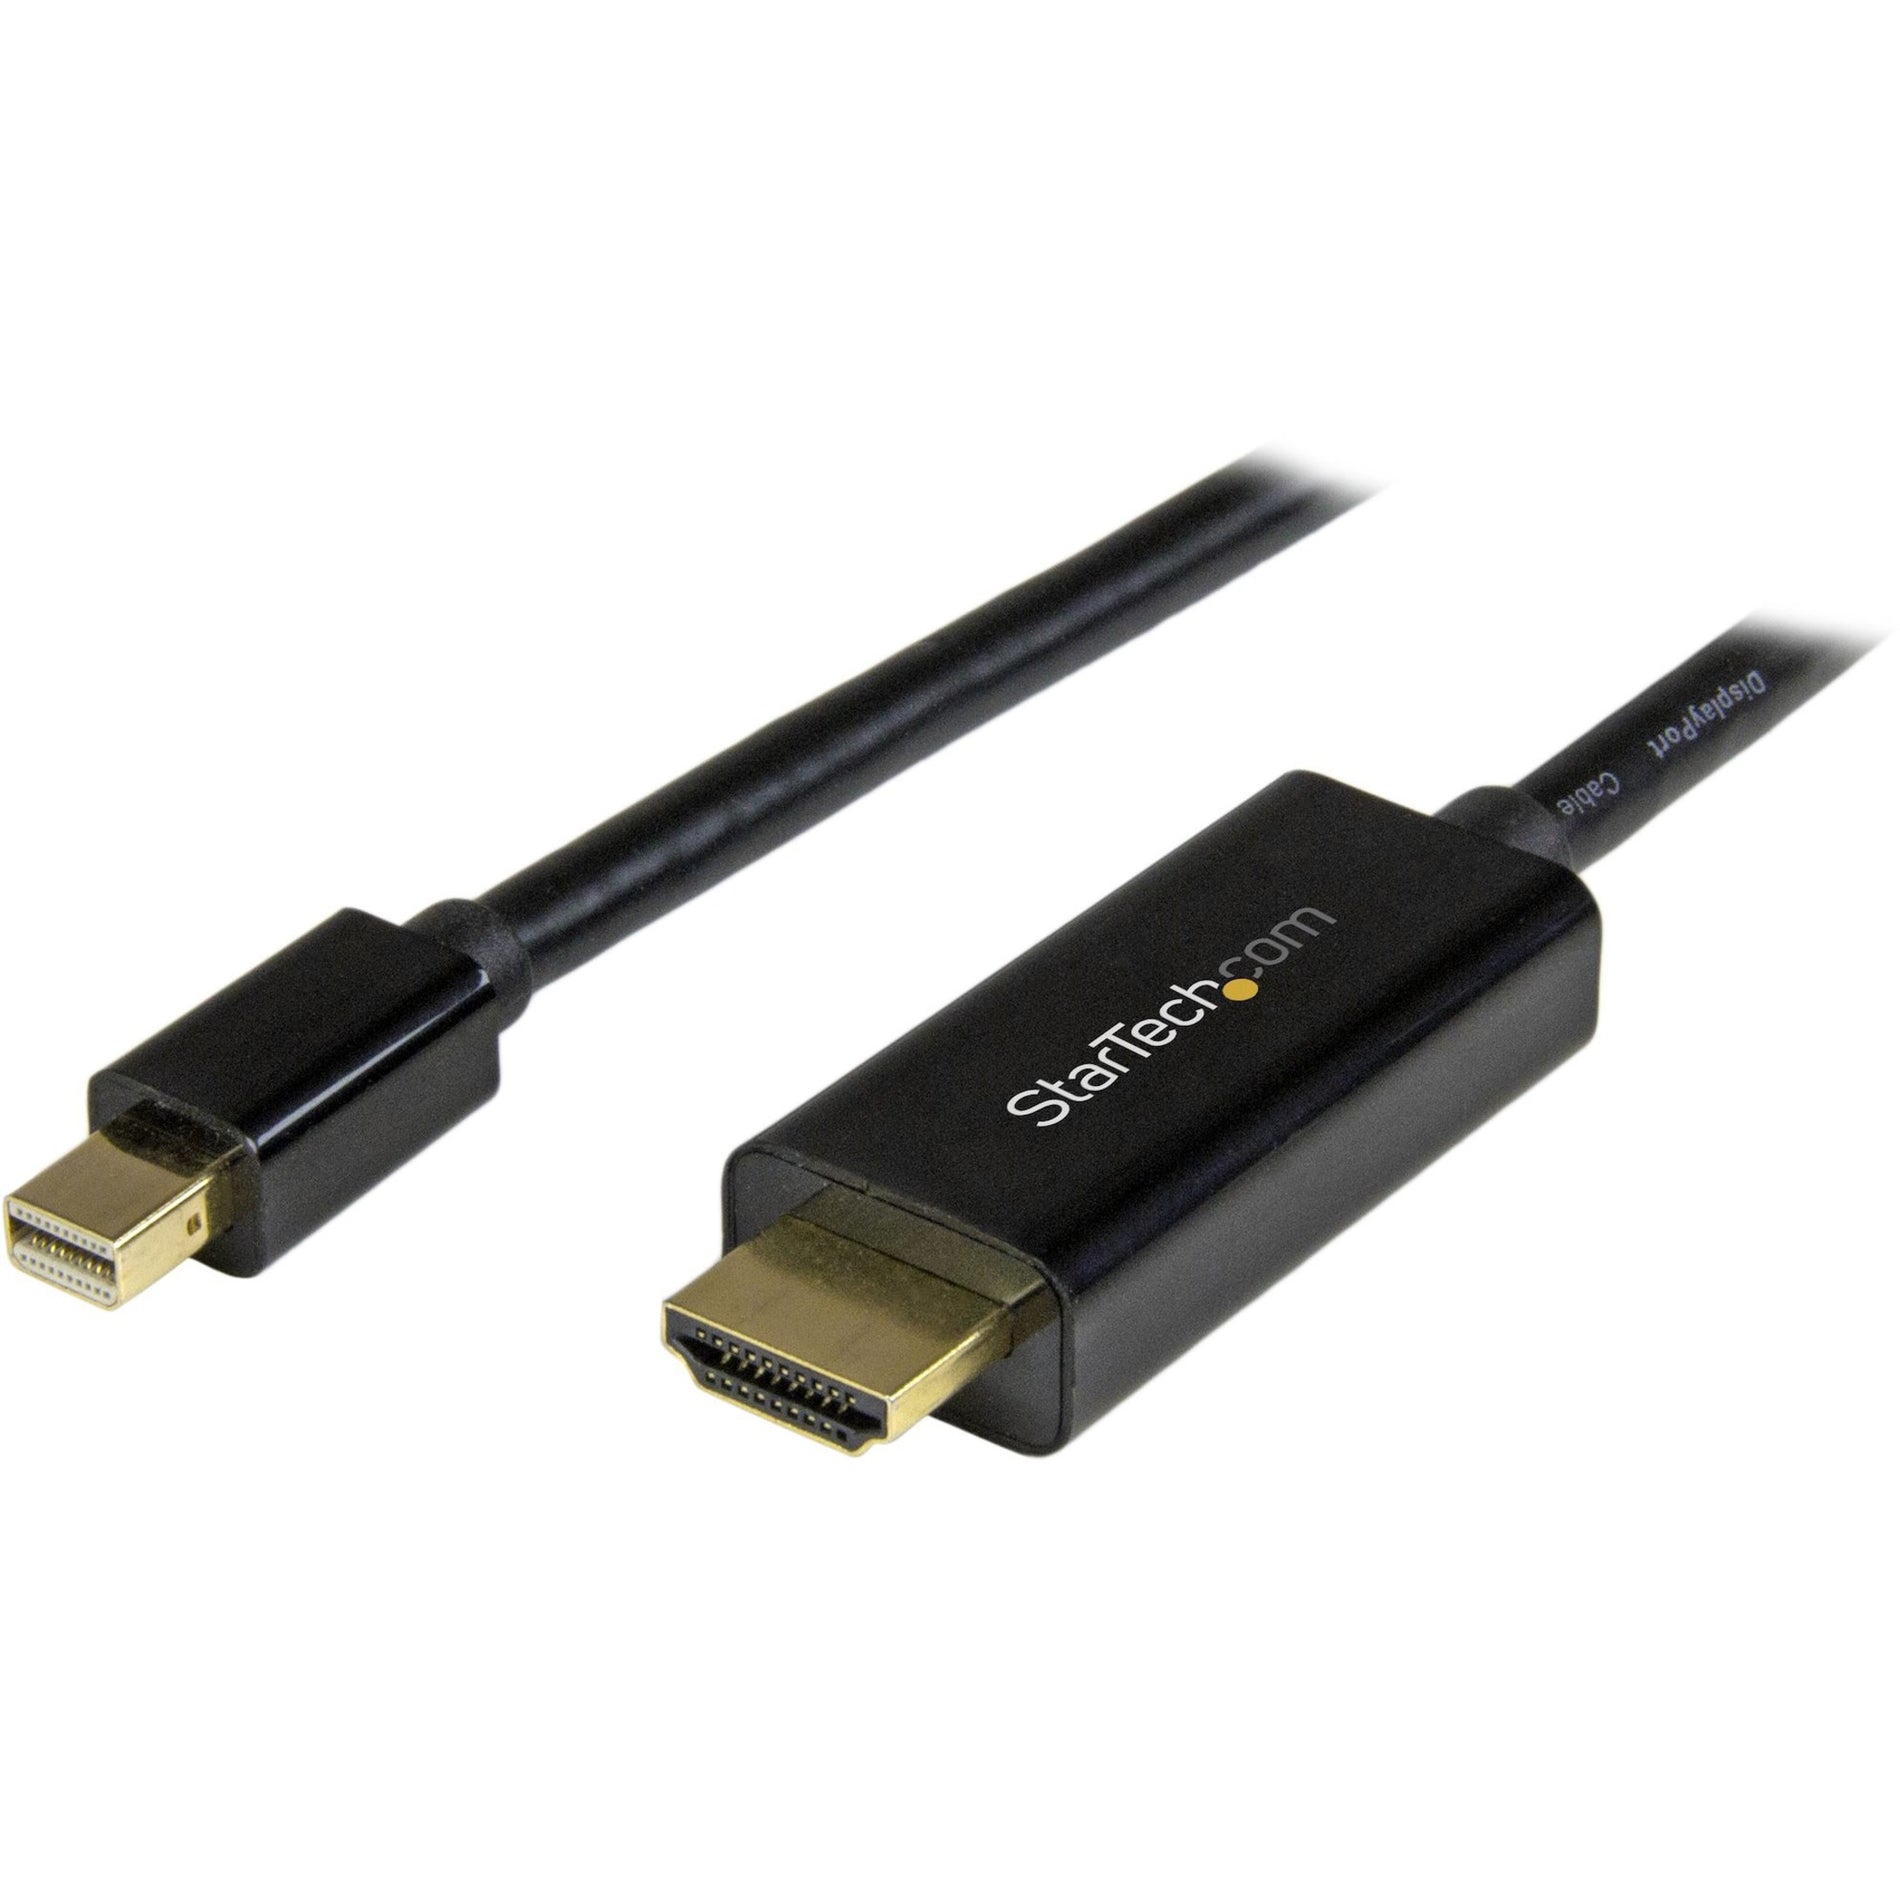 ستارتك.كوم MDP2HDMM5MB كابل تحويل مصغر من منفذ العرض إلى HDMI - 5 م (15 قدم) Ultra HD 4K 30Hz ستارتك.كوم  ستارتك.كوم